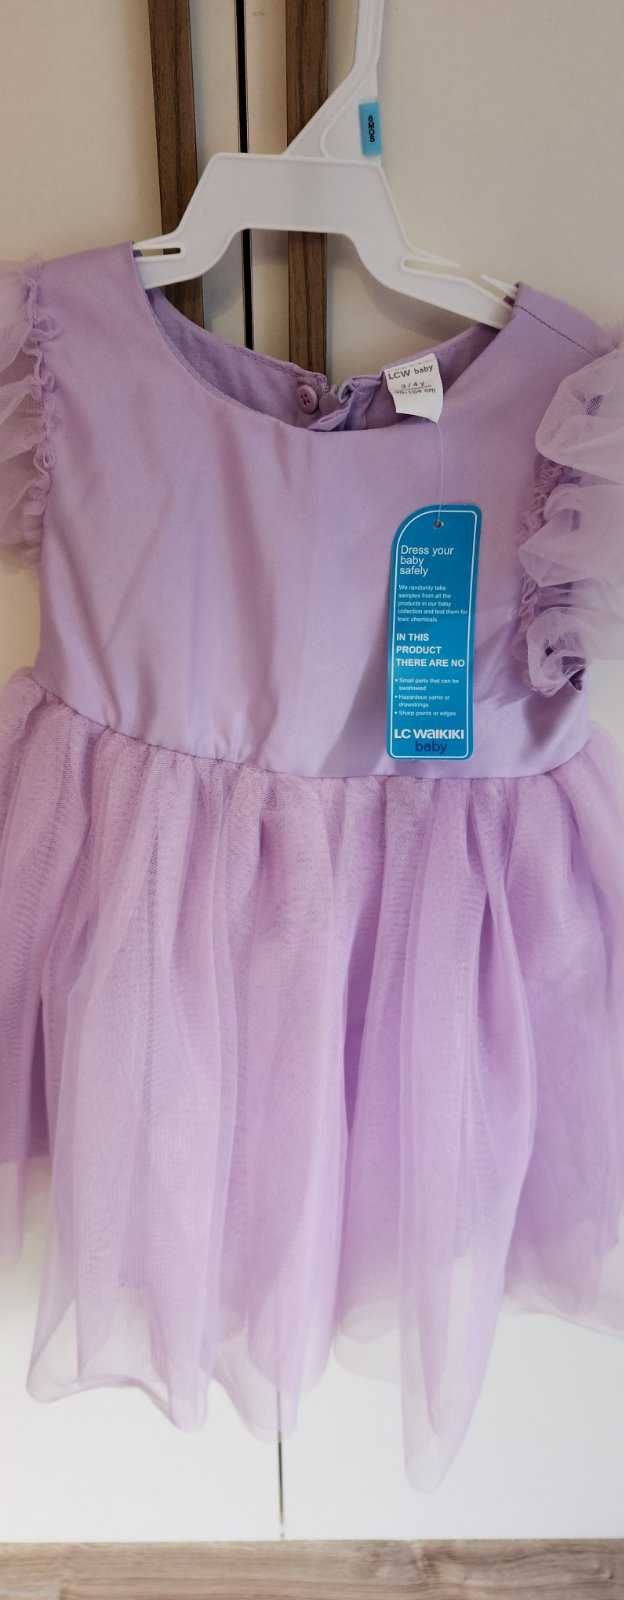 Детска рокля в лилаво 98 р - р 2 - 3 г